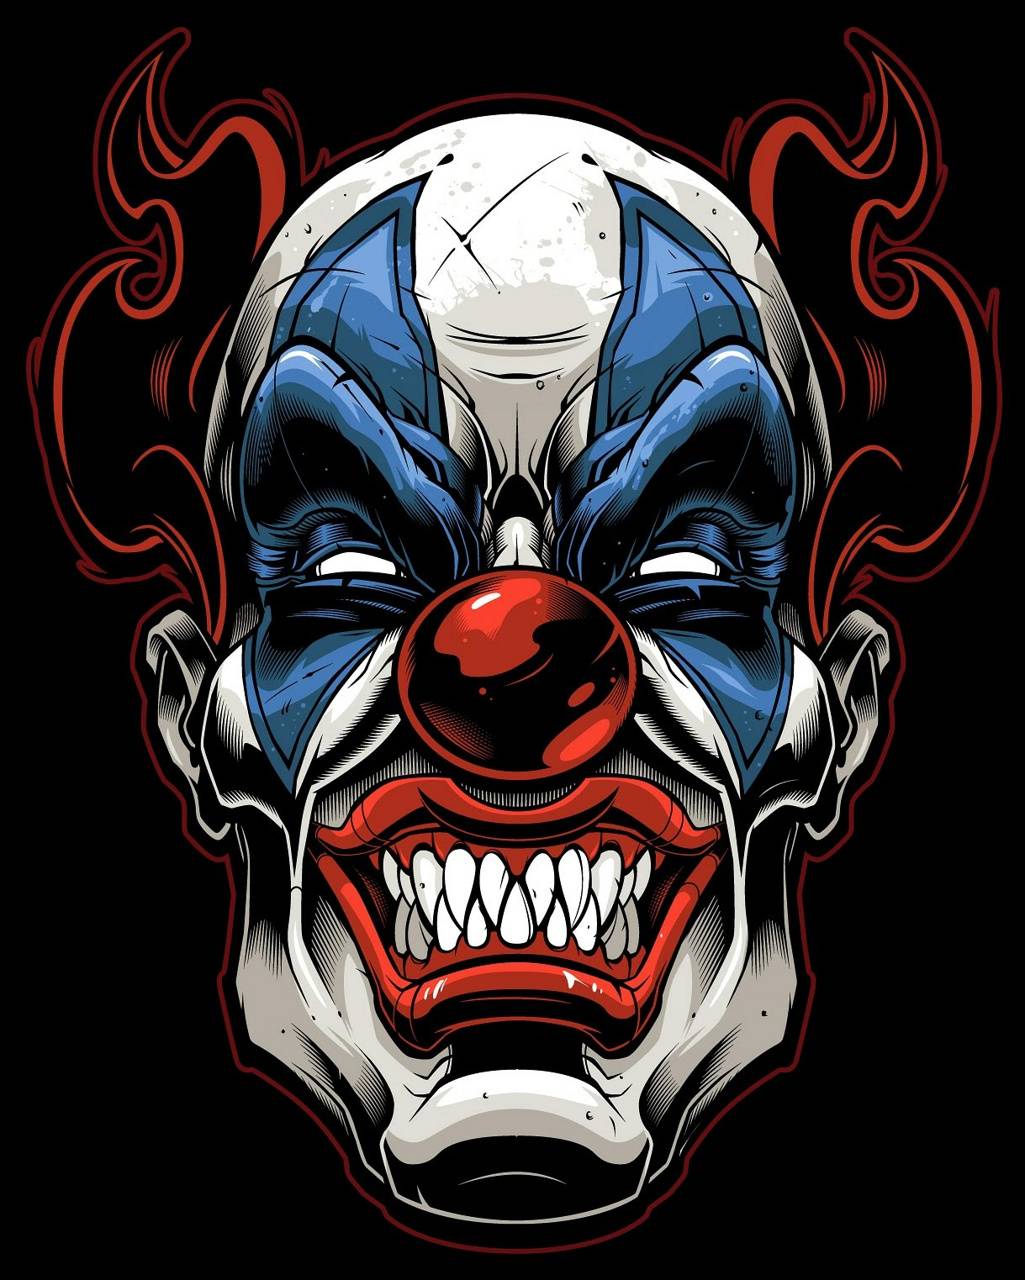 Evil Clown Skull Wallpapers - Top Free Evil Clown Skull Backgrounds ...